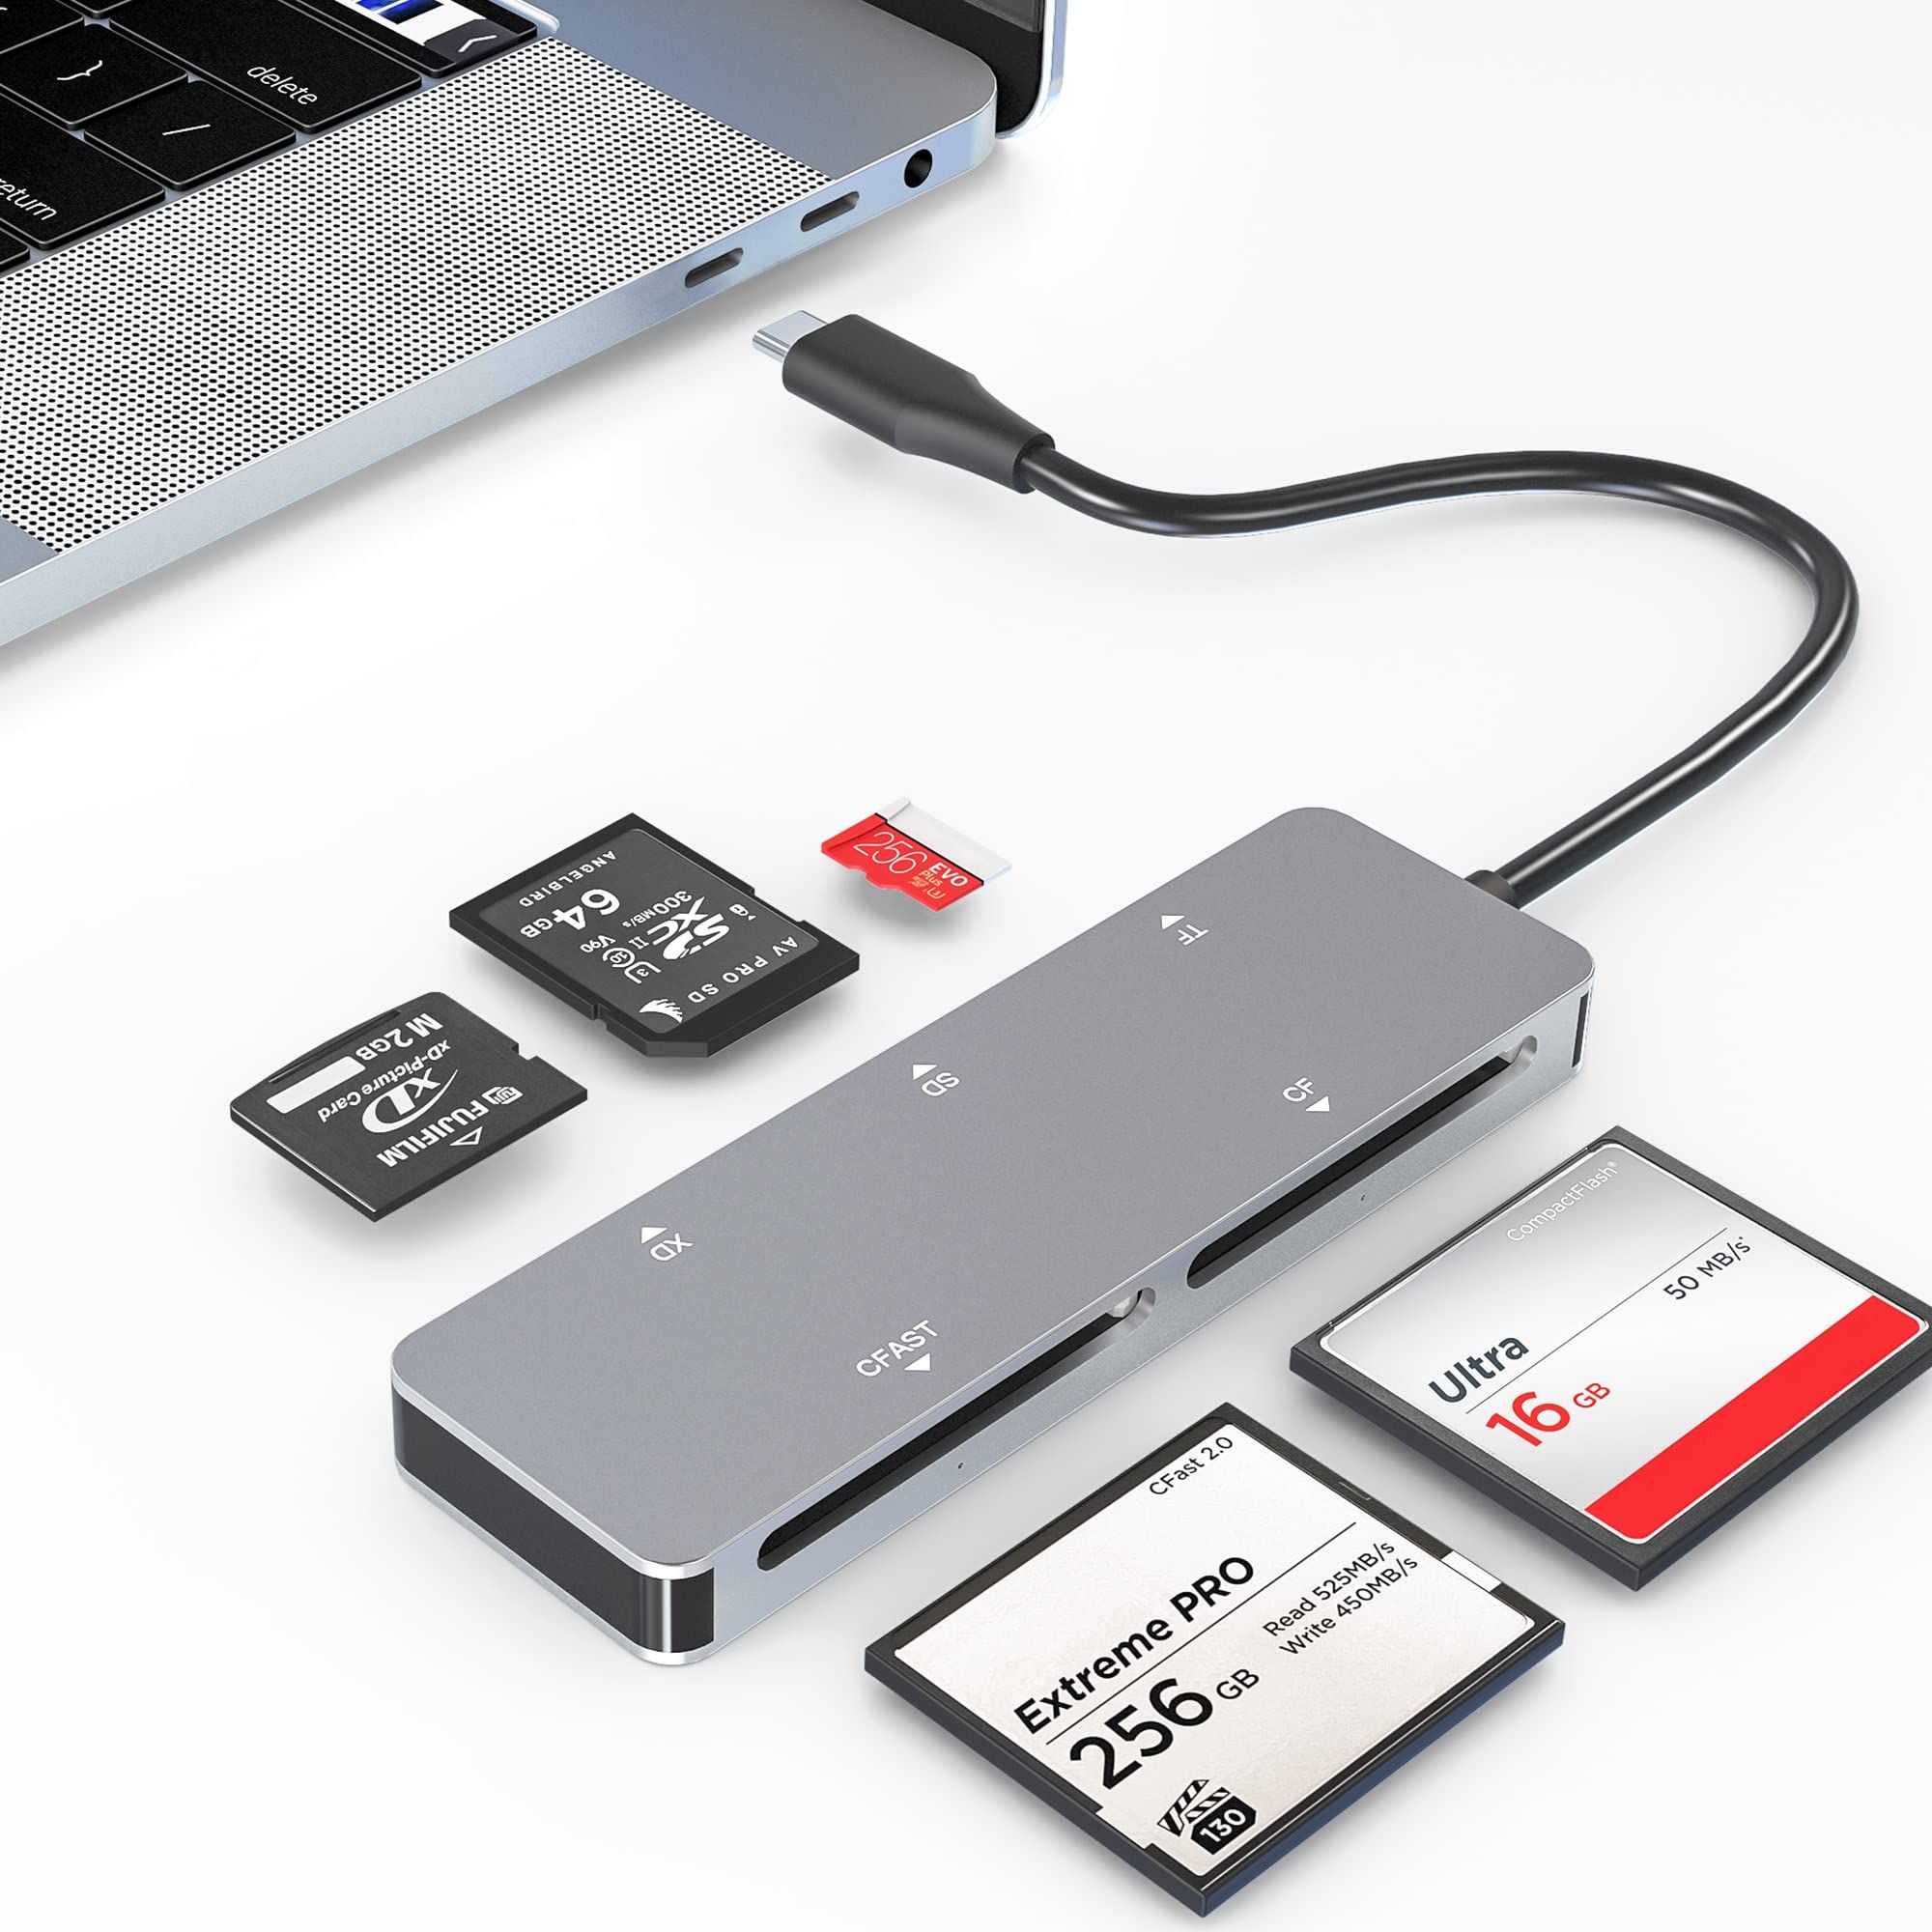 ?【USB C CFast 2.0 カードリーダー】CFast 2.0メモリーカードのデータ転送に対応。高速Type-C 3.0データ転送速度超高速5Gbpsで、高解像度の画像やビデオ録画をより速く、より効率的にコンピューターに転送できます。USB-C 3.0は、USB 2.0とUSB 1.1の後方互換性があります。?【1台で5つのカードリーダー】： 5枚のカードを同時に読み書きでき、抜き差しの手間が省けます。CFastカード、CFカード（CFカードスロット） ; XDカード（XDカードスロット） ; Miscro SD, Micro SDHC, Micro SDXC, TFカード（TFカードスロット） ,SDHC, SDカード, RS-MMC, MMCマイクロカード（SDカードスロット） .?【プラグアンドプレイ】： 電源やアプリを追加する必要がなく、プラグアンドプレイで使用できます。ホットスワップ。アルミニウム材料、抗酸化、高温耐性、このカードリーダーの寿命を拡大するの作る。?【幅広い互換性】Windows XP/Vista/7/8/8.1/10, Mac OS, Linux, Chrome OS などと互換性があります。プラグ＆プレイ、ホットスワップ機能；外部電源不要、USBバスパワー、カメラマンやビデオグラファーの携帯や使用に簡単で便利です。